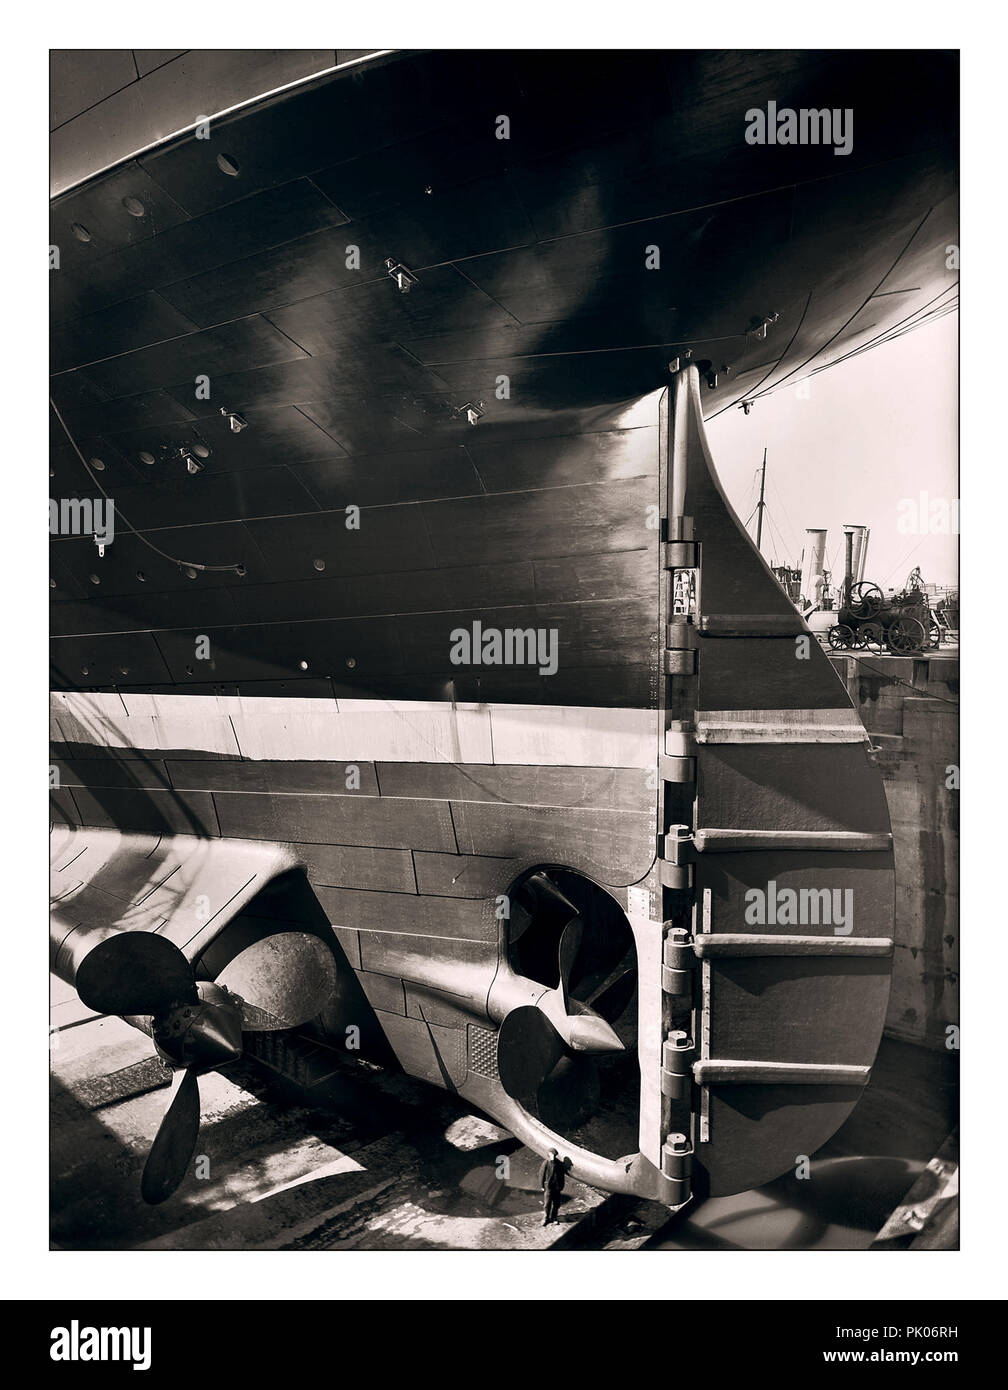 TITANIC STERN WORKER SIZE CONSTRUCTION Historisches 1912 Bild von RMS Titanic Ruder und Propellern mit Schiffsarbeiter auf der riesigen Trockendock-Baustelle, die der riesigen Ocean Liner Harland und Wolff Werft Belfast UK noch größere Größe verleiht Stockfoto